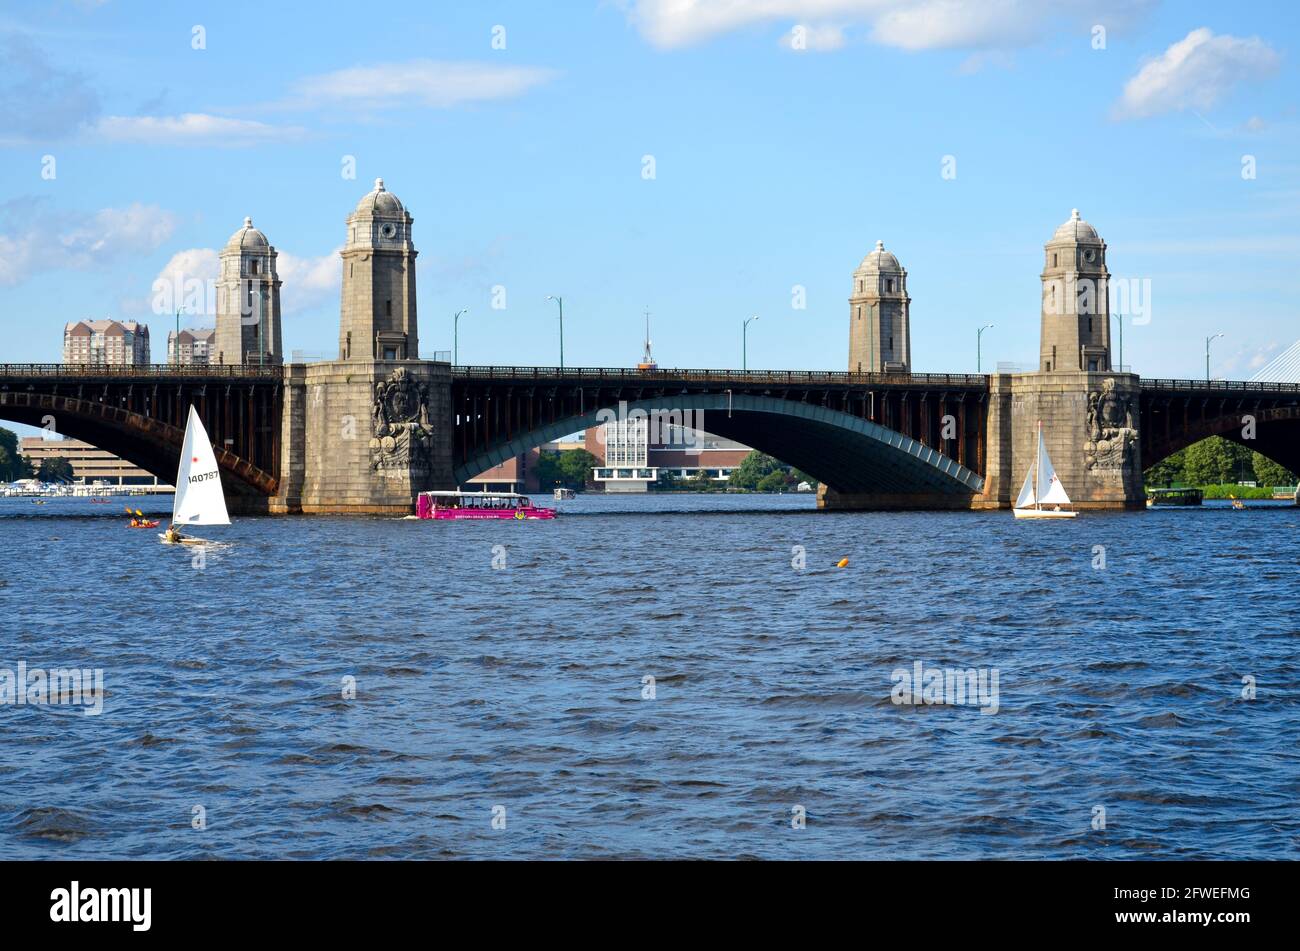 Boston, USA - August 3 2013: Die Longfellow Bridge über den Charles River mit einigen Segelbooten und einem Zug auf der Brücke unter leicht bewölktem Himmel Stockfoto